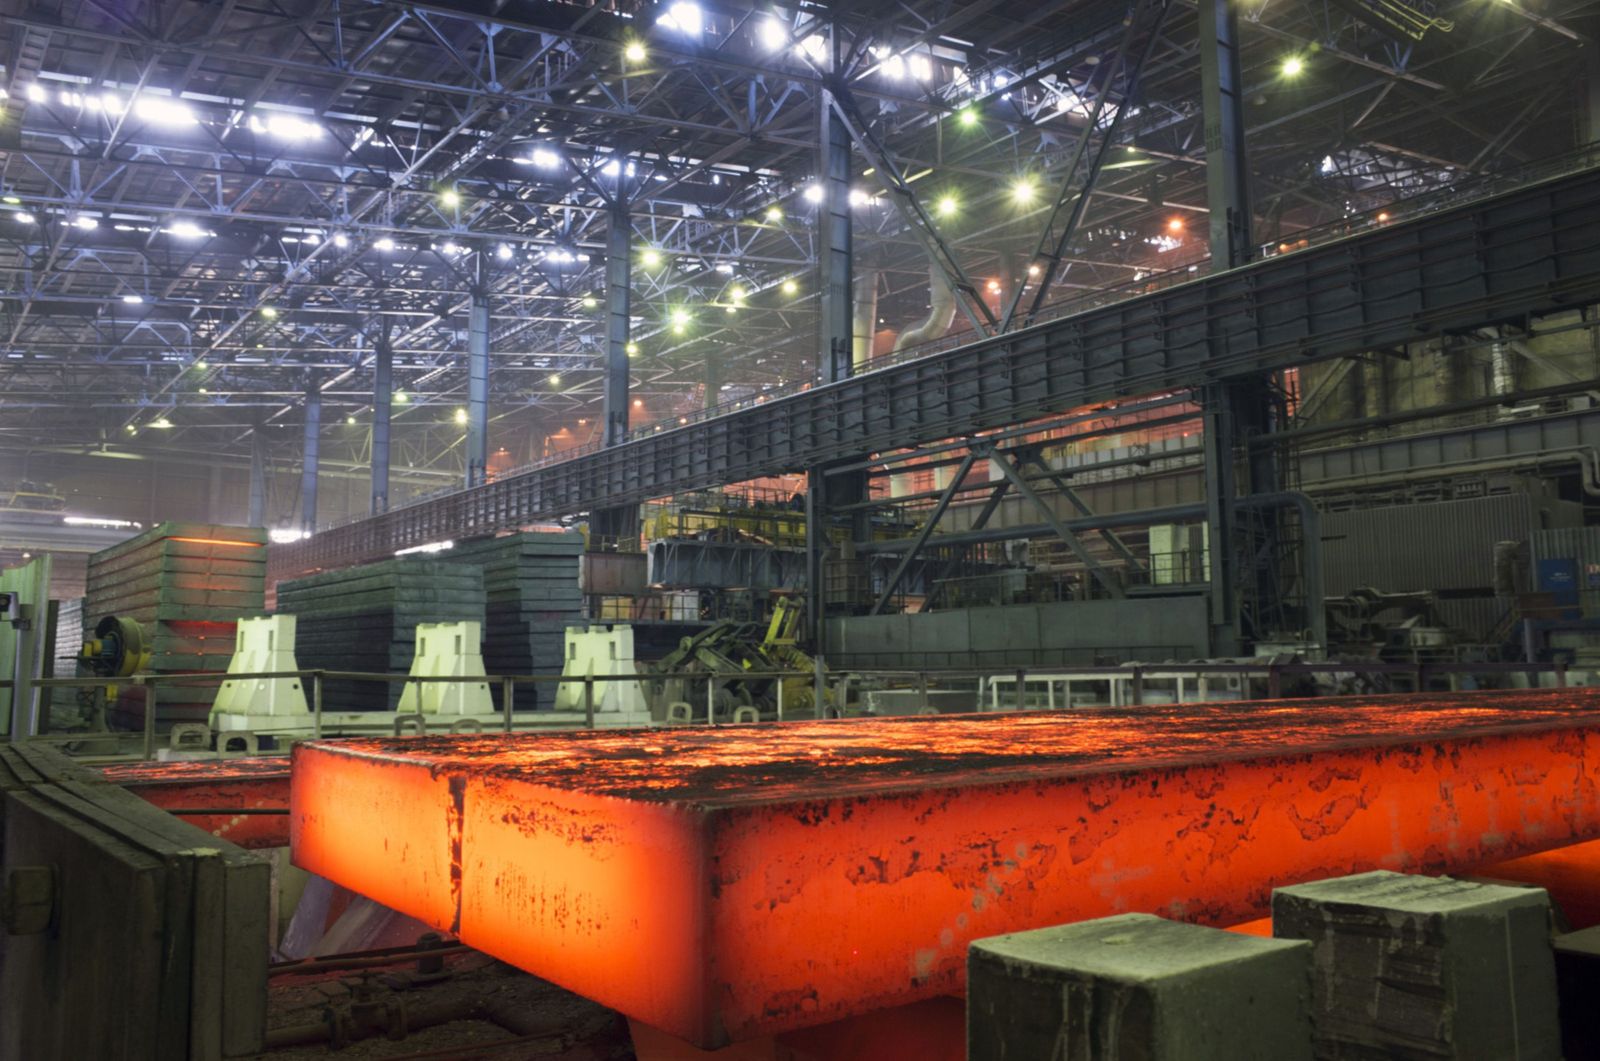 مصنع صلب في مدينة ماريوبل الأوكرانية - 24 مارس 2014 - Bloomberg